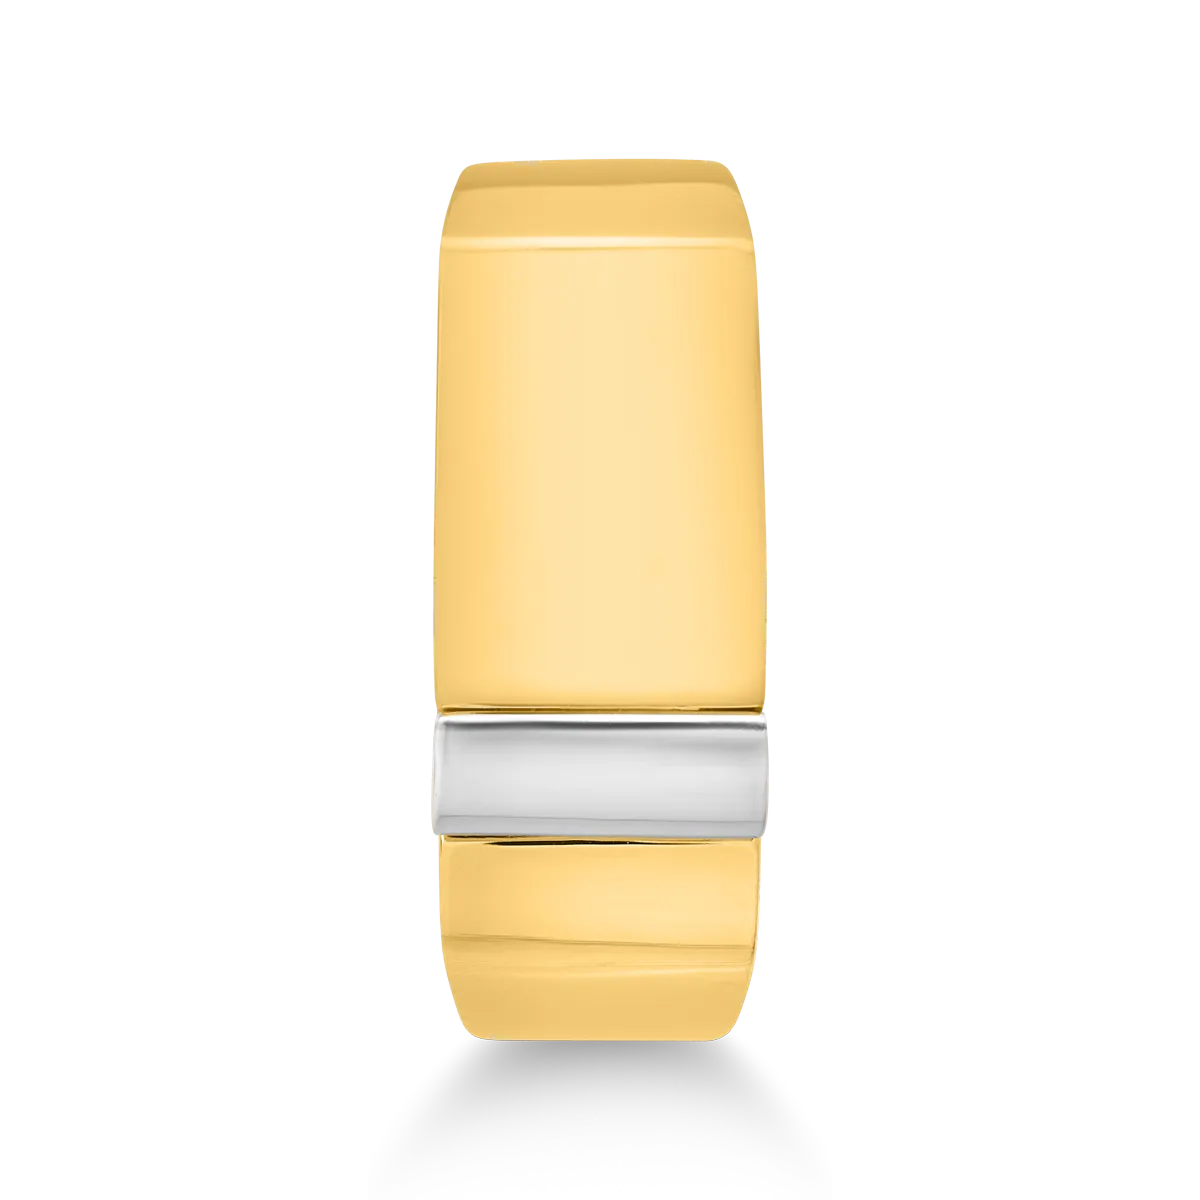 14K biało-żółty złoty pierścionek